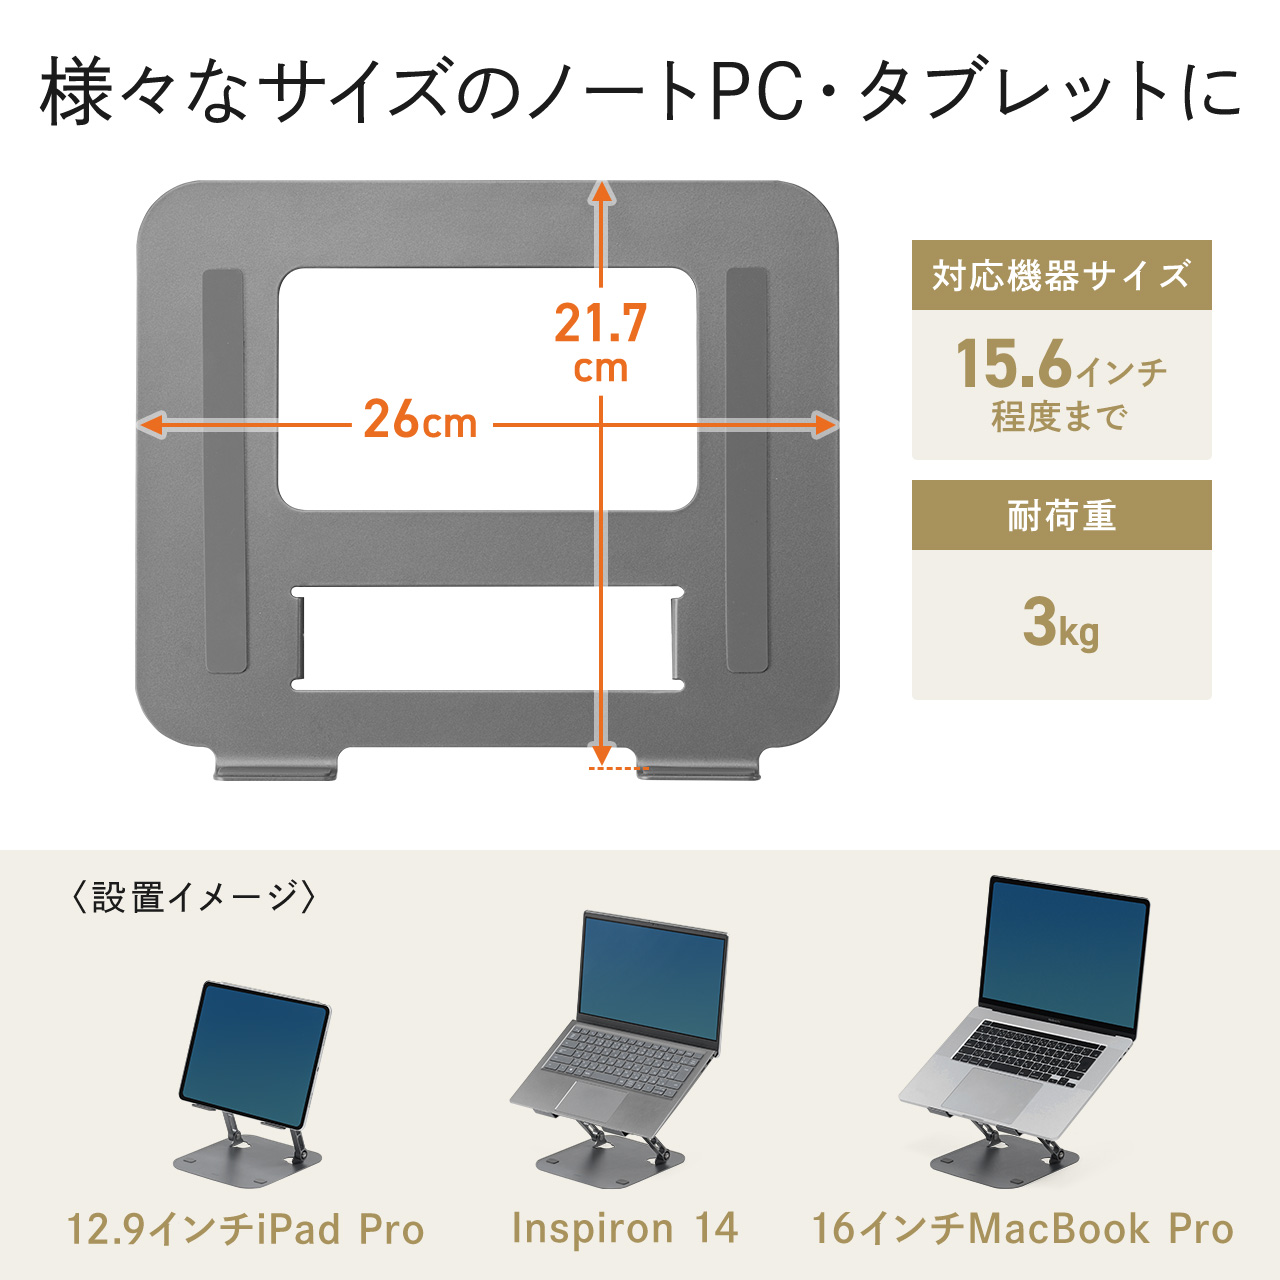 ノートパソコンスタンド PCスタンド 折りたたみ式 スチール製 無段階 角度調整 高さ調整 iPad タブレットスタンド 姿勢改善 卓上 ノートパソコン台 200-STN077